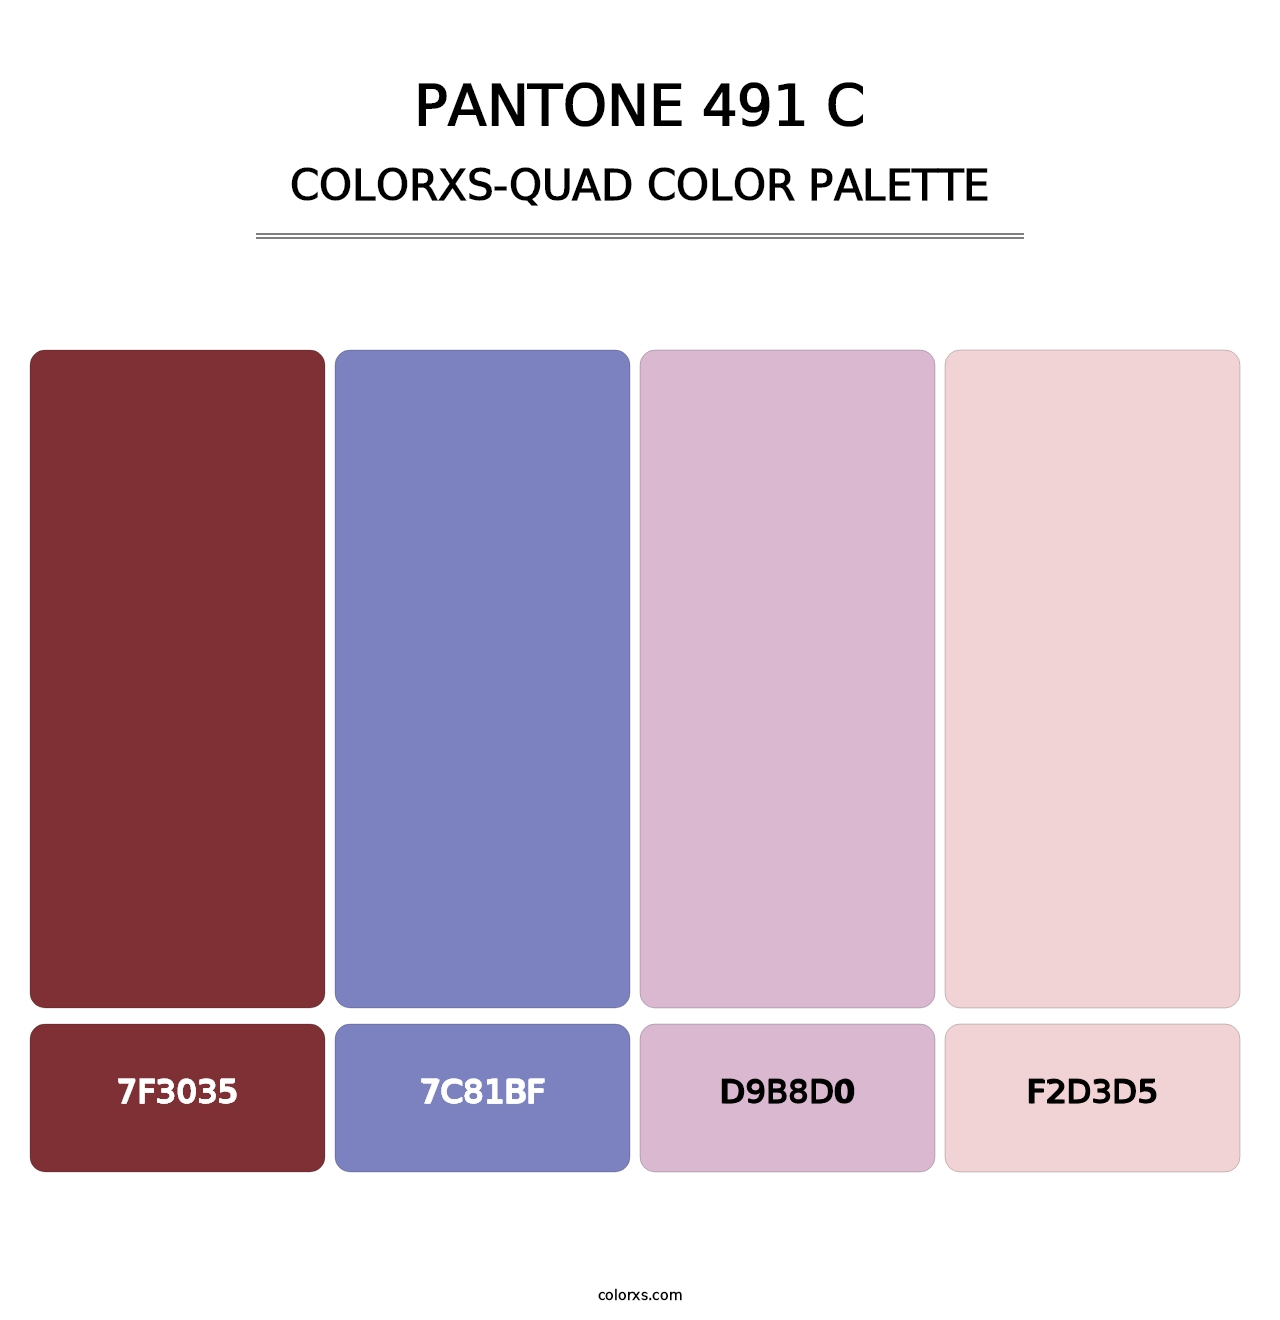 PANTONE 491 C - Colorxs Quad Palette